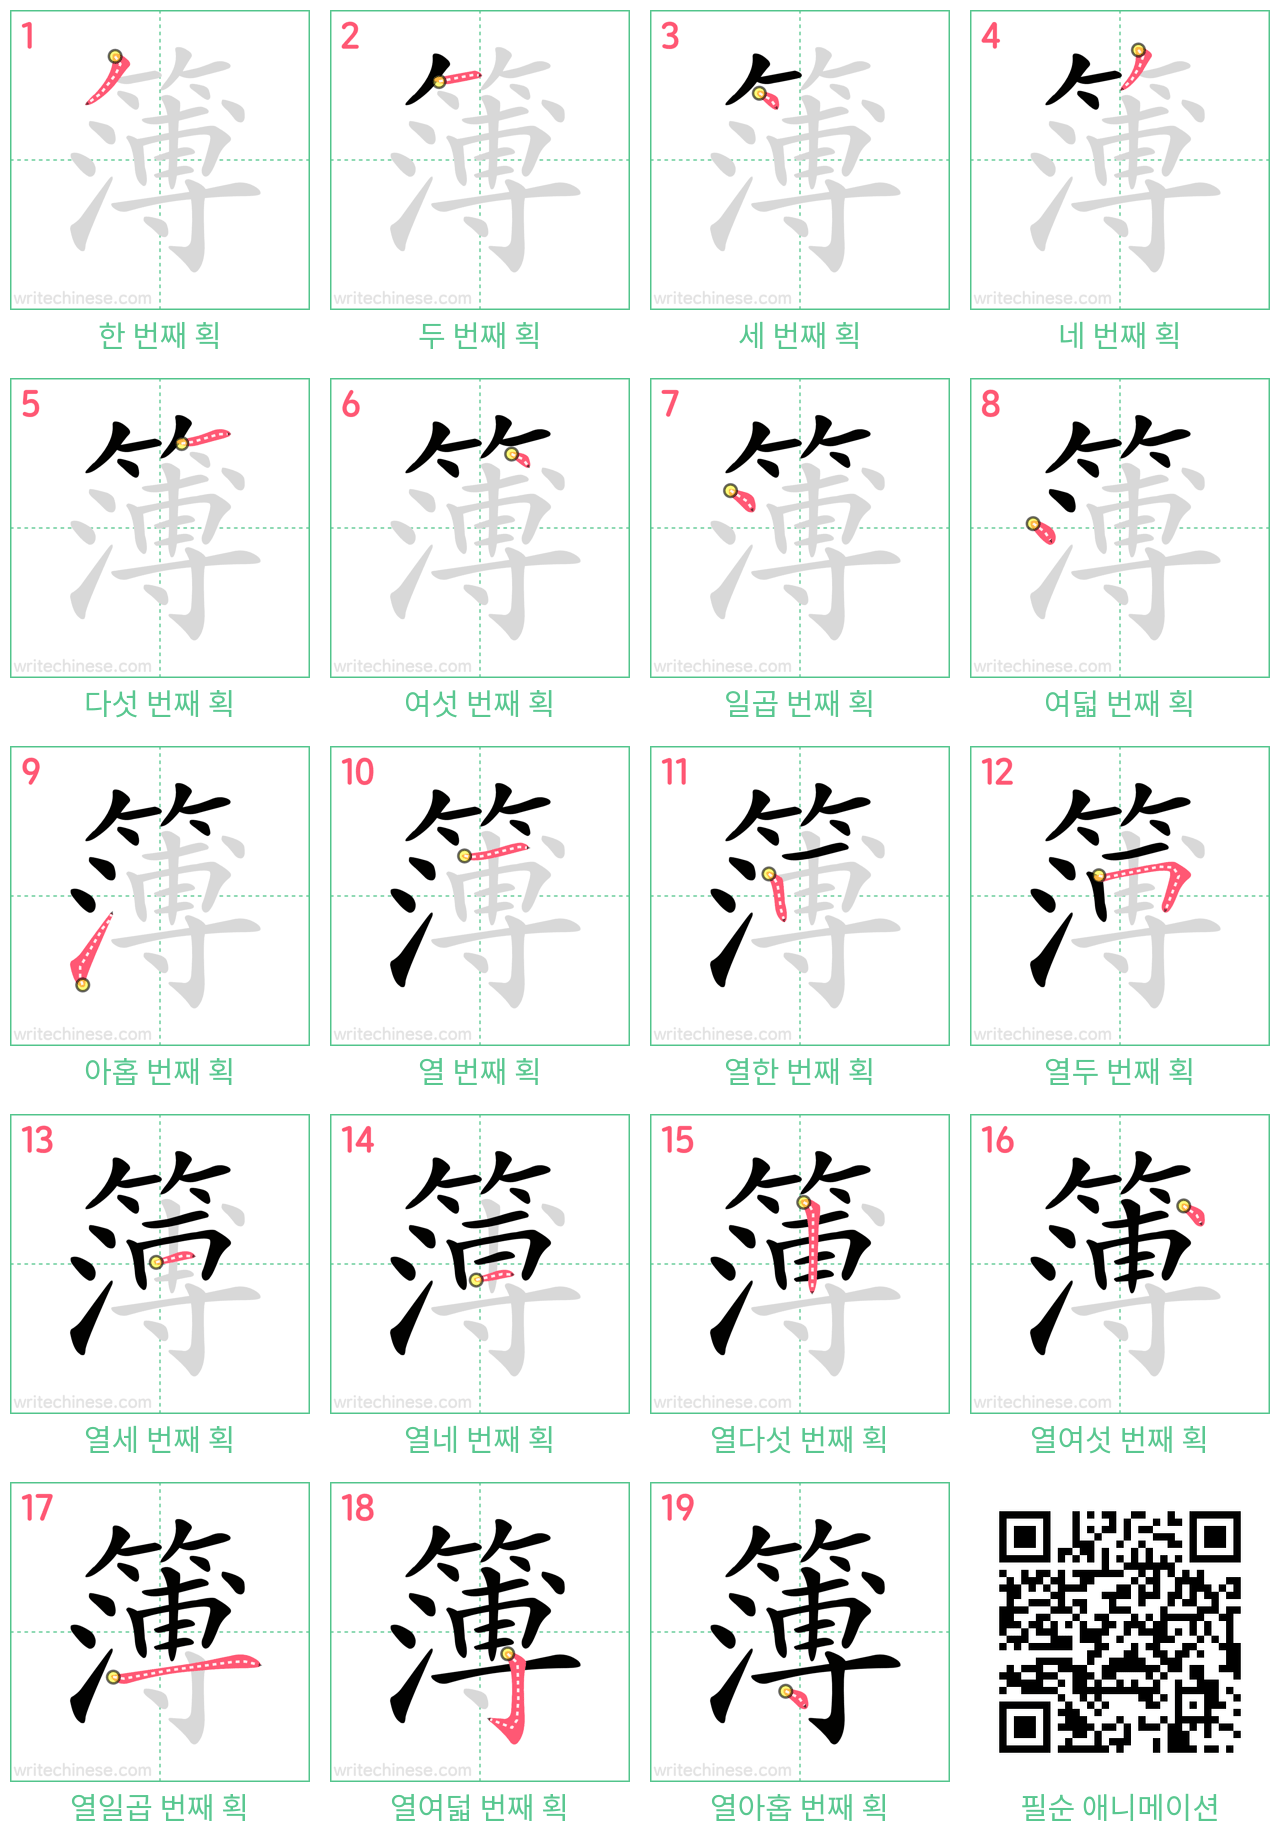 簿 step-by-step stroke order diagrams